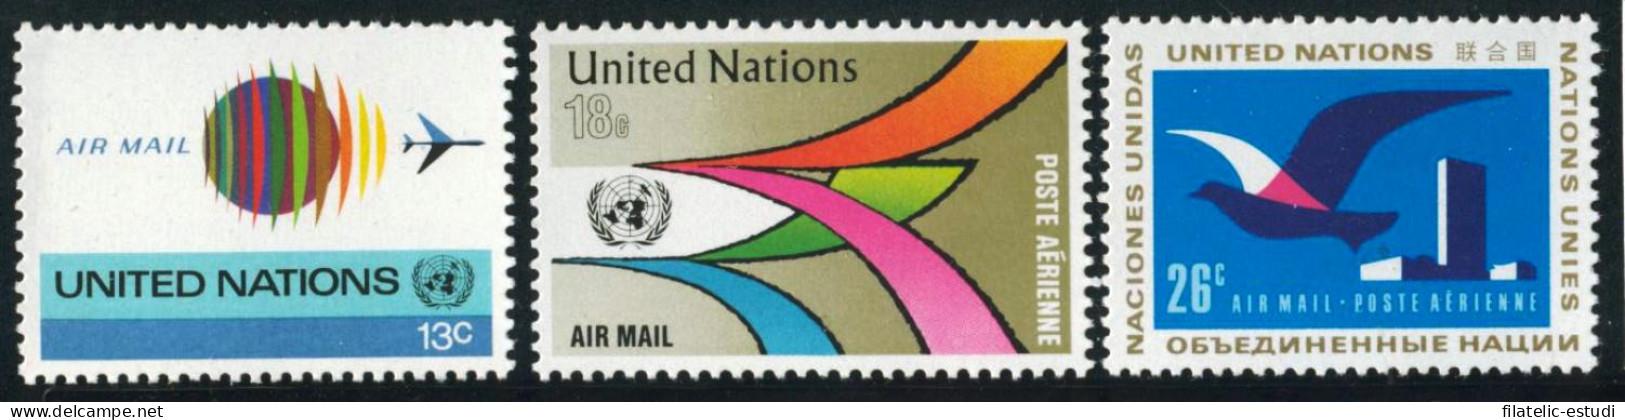 FAU2/S Naciones Unidas  New York  Nº A 19/21  1974  Serie Aves Avion Símbolo L - Airmail